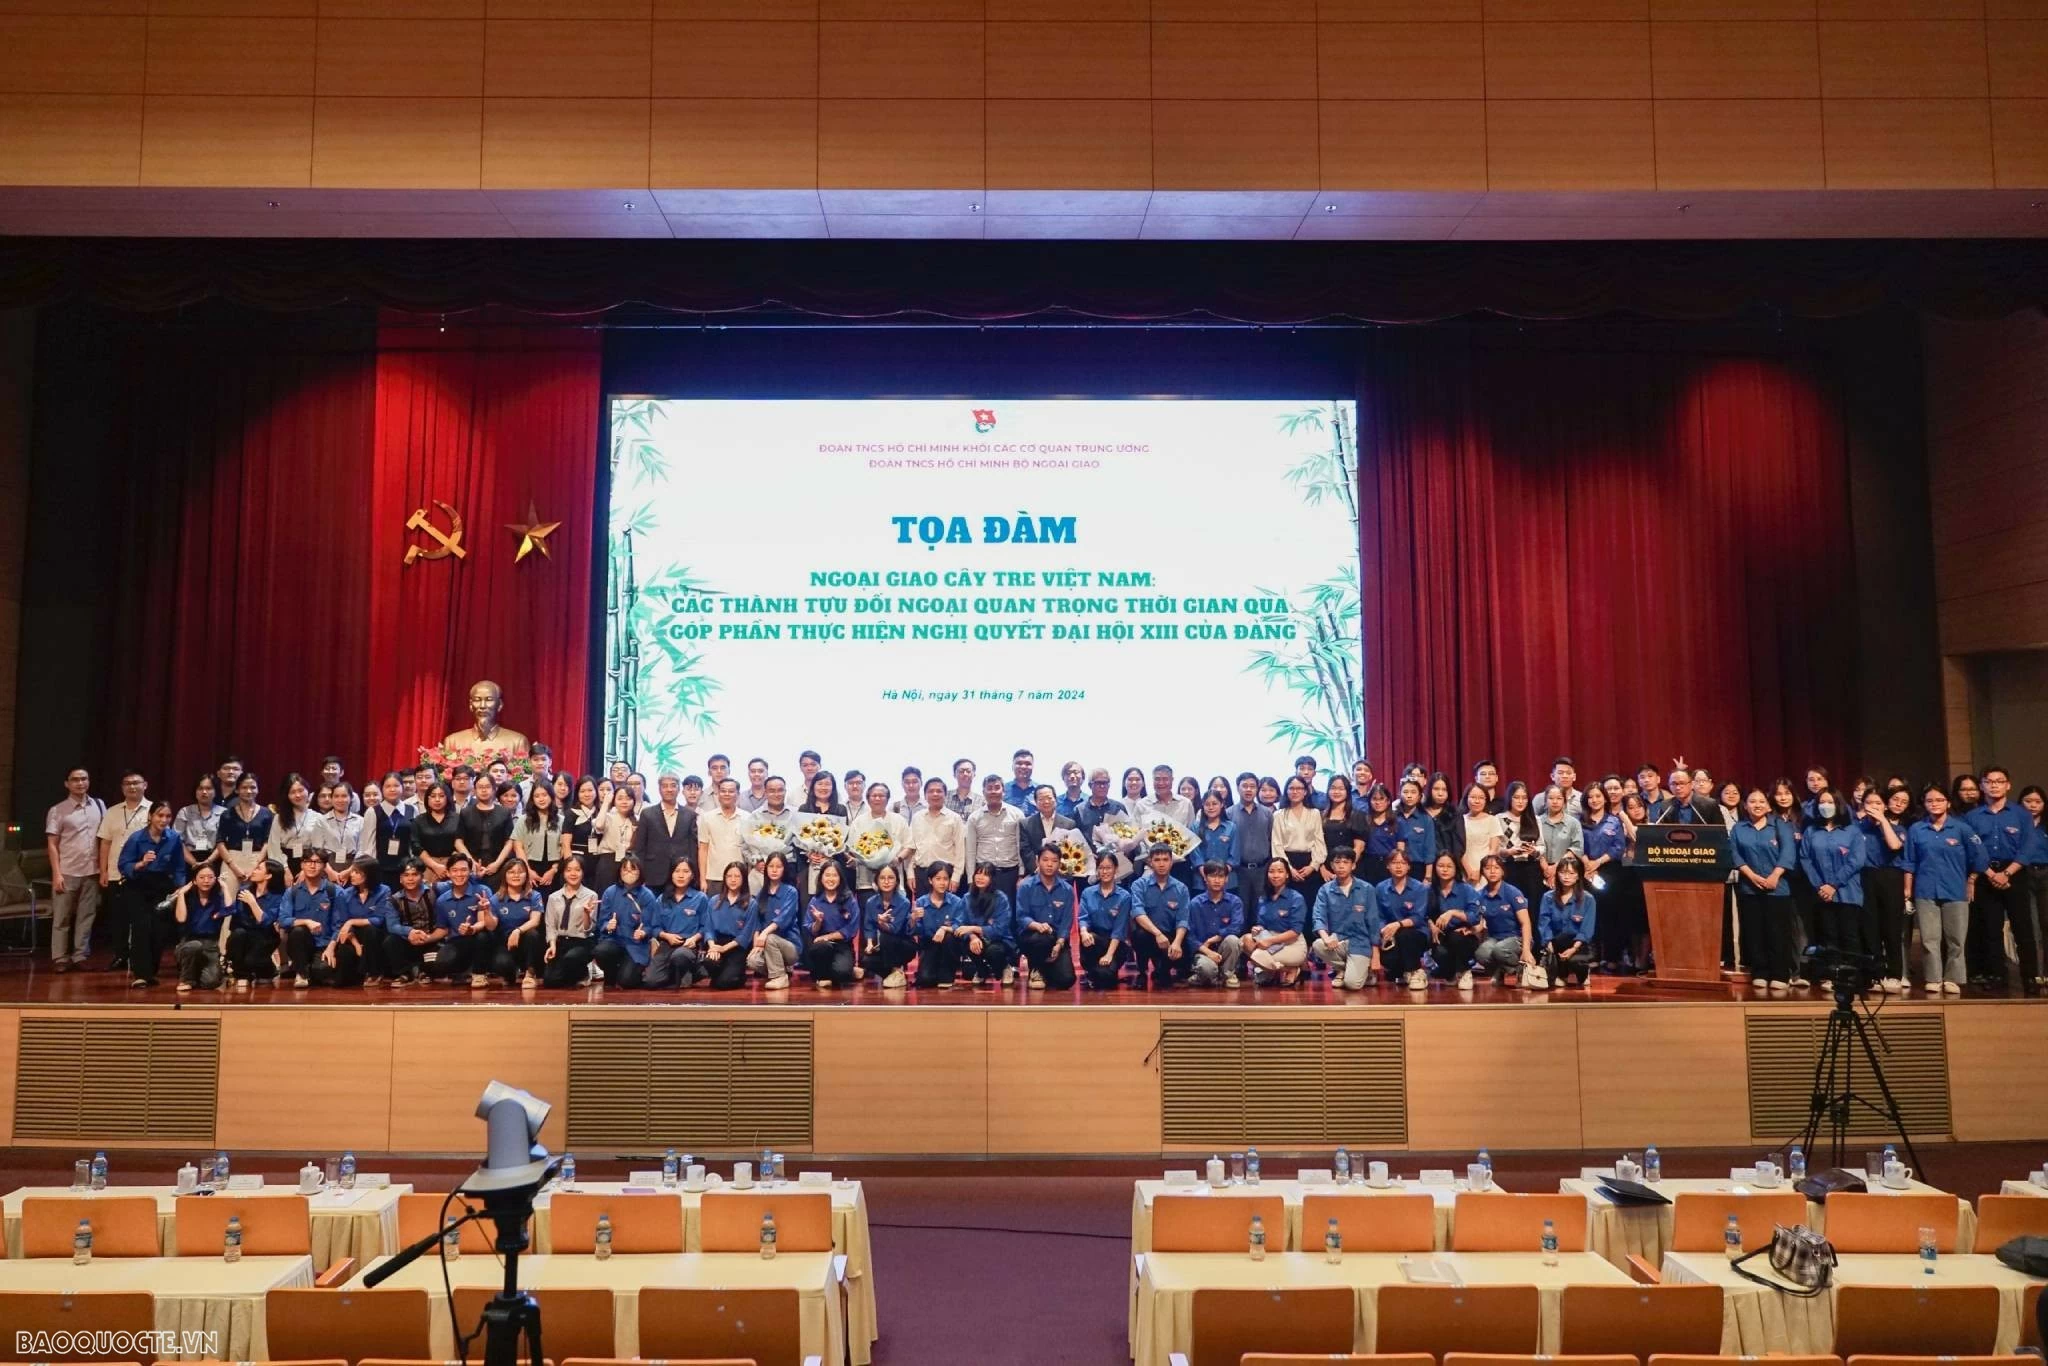 Thanh niên học tập và rèn luyện theo phong cách 'ngoại giao cây tre Việt Nam' của cố Tổng Bí thư Nguyễn Phú Trọng